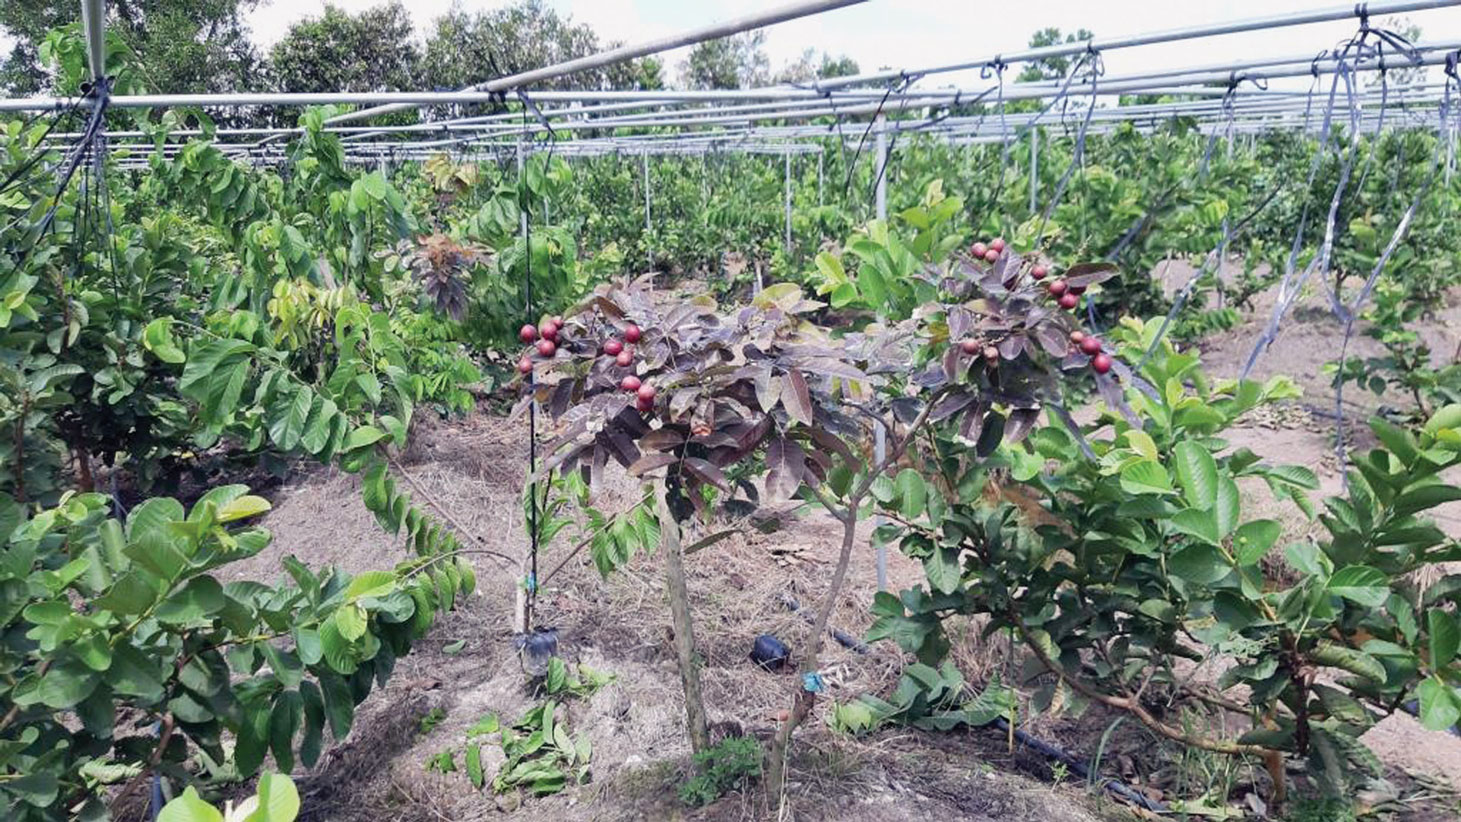 Vườn ươm giống cây trái có giá trị kinh tế cao tại Hợp tác xã Nông nghiệp ứng dụng công nghệ cao xã Tân Thành